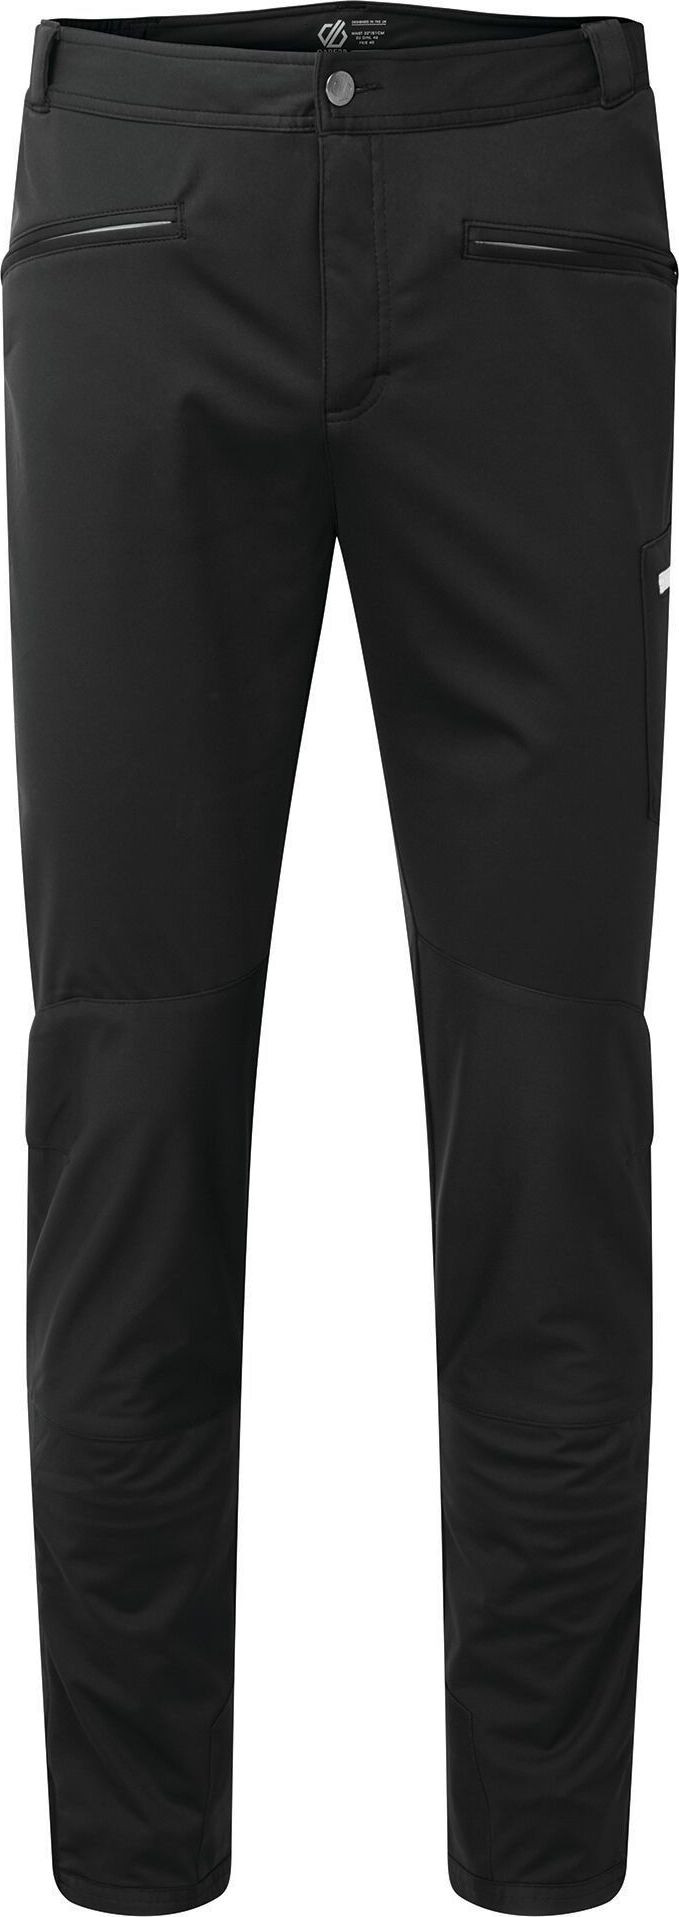 Pánské outdoorové kalhoty Dare2B Appended II Trs 800 Černé Černá S/M